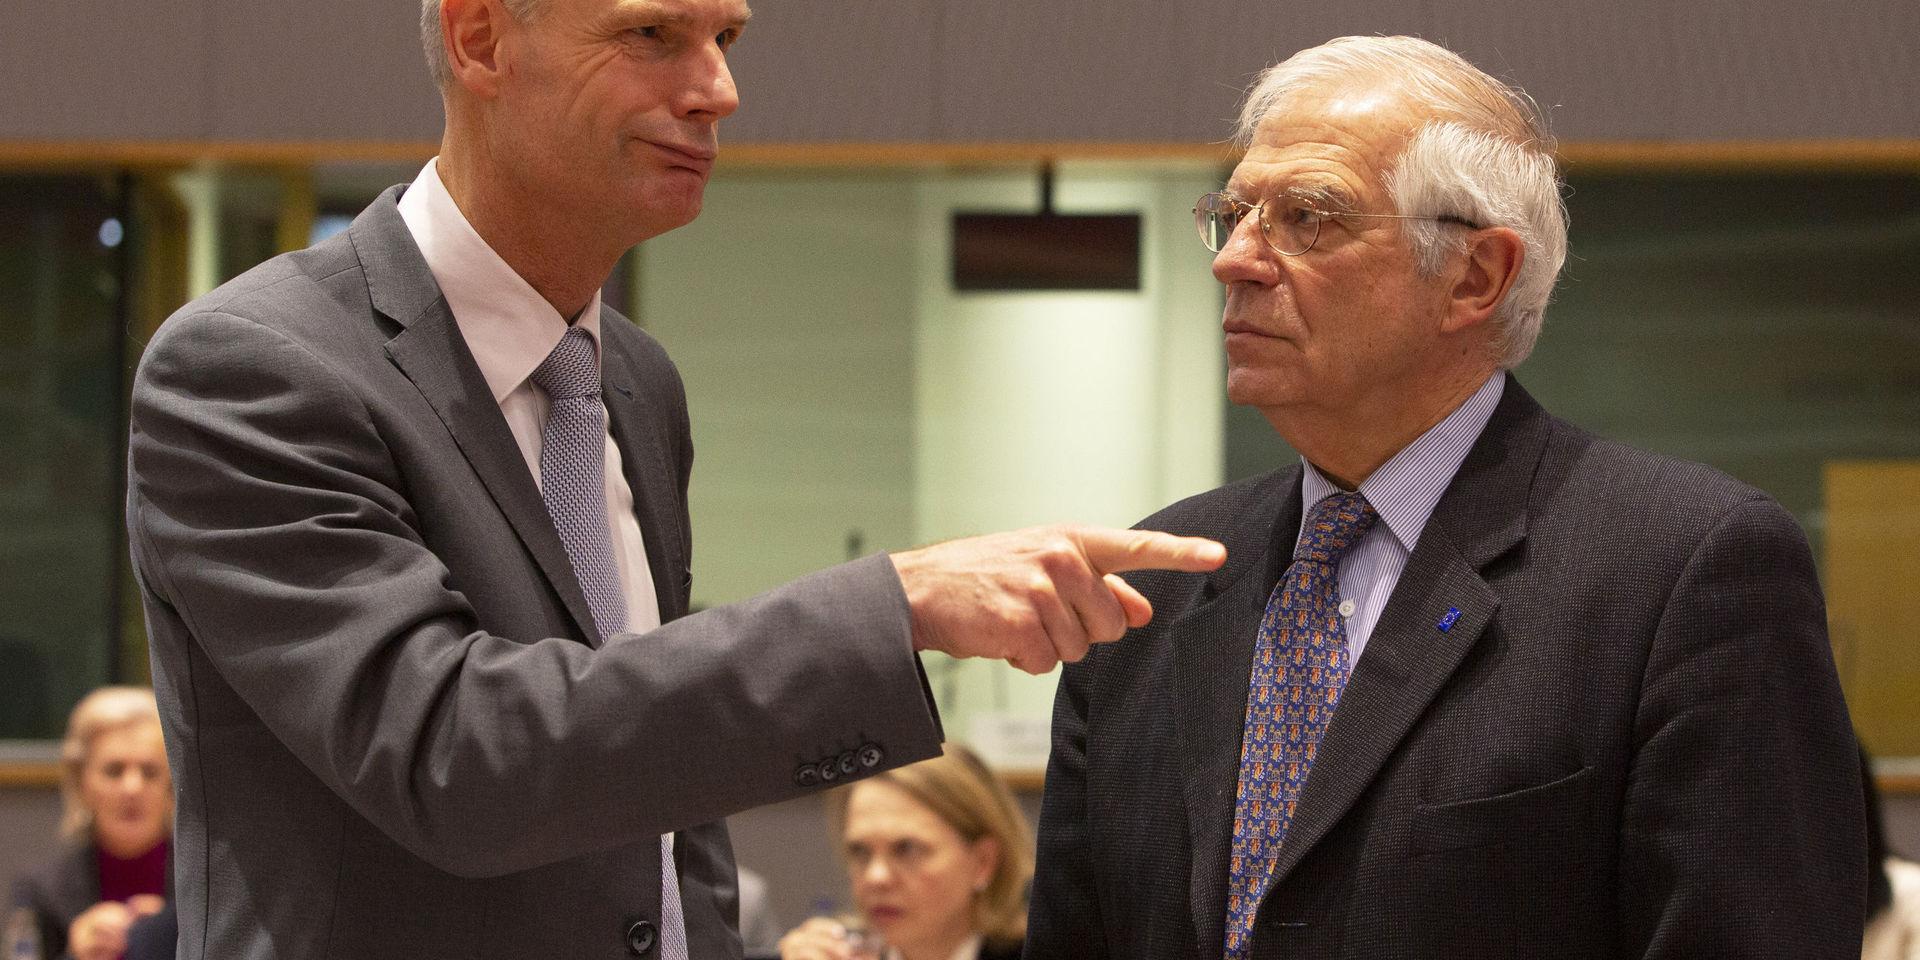 EU:s nye utrikeschef Josep Borrell (till höger) tillsammans med Nederländernas utrikesminister Stef Blok.